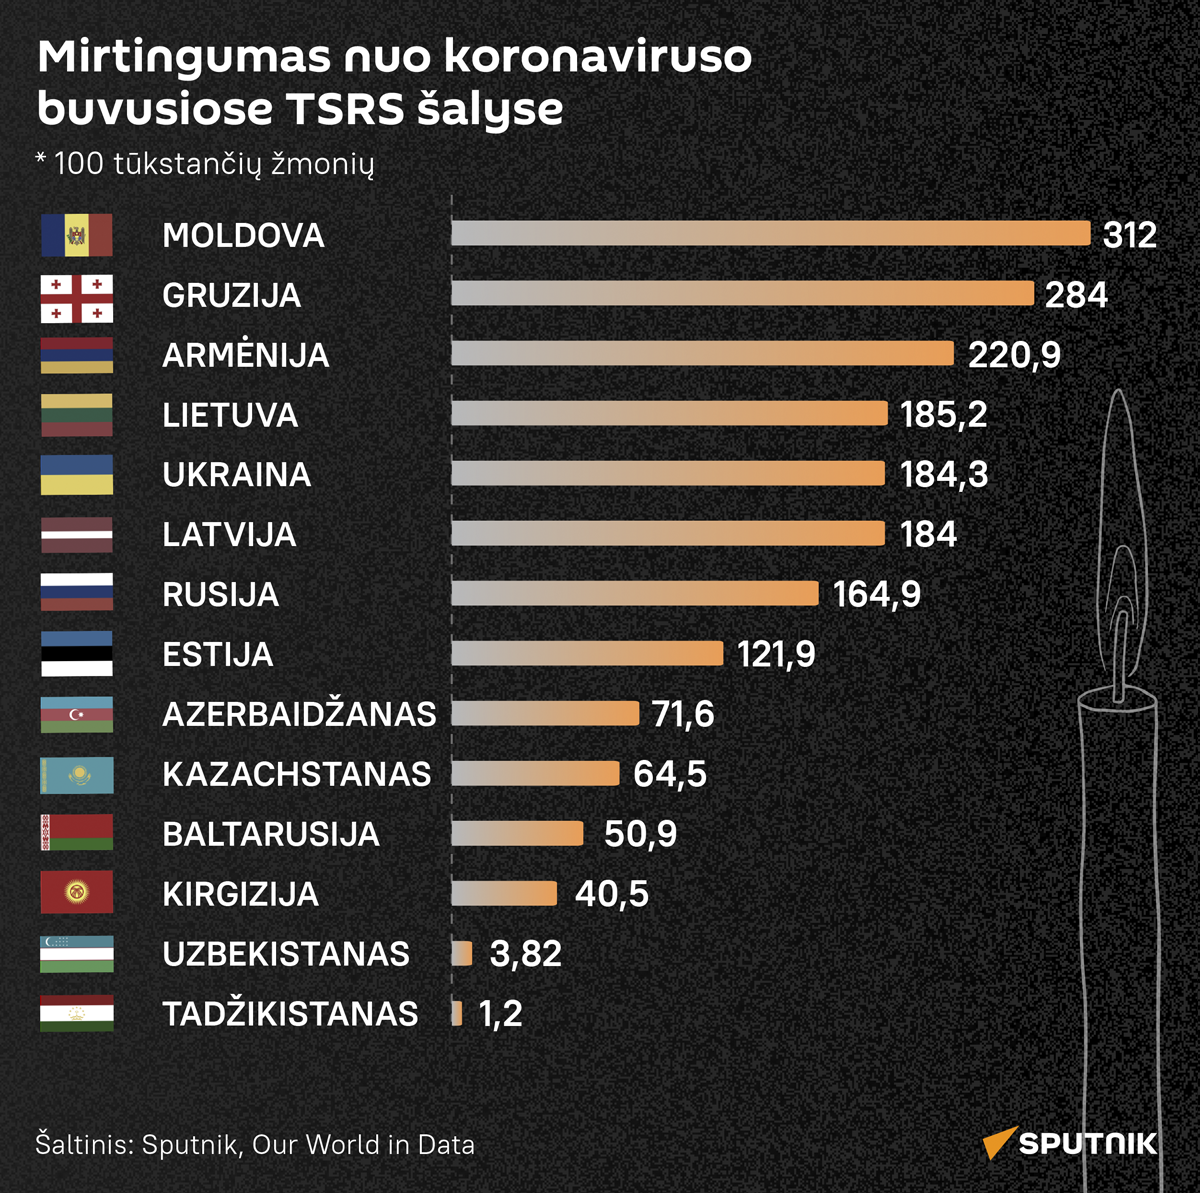 Mirtingumas nuo koronaviruso artimosios kaimynystės šalyse - Sputnik Lietuva